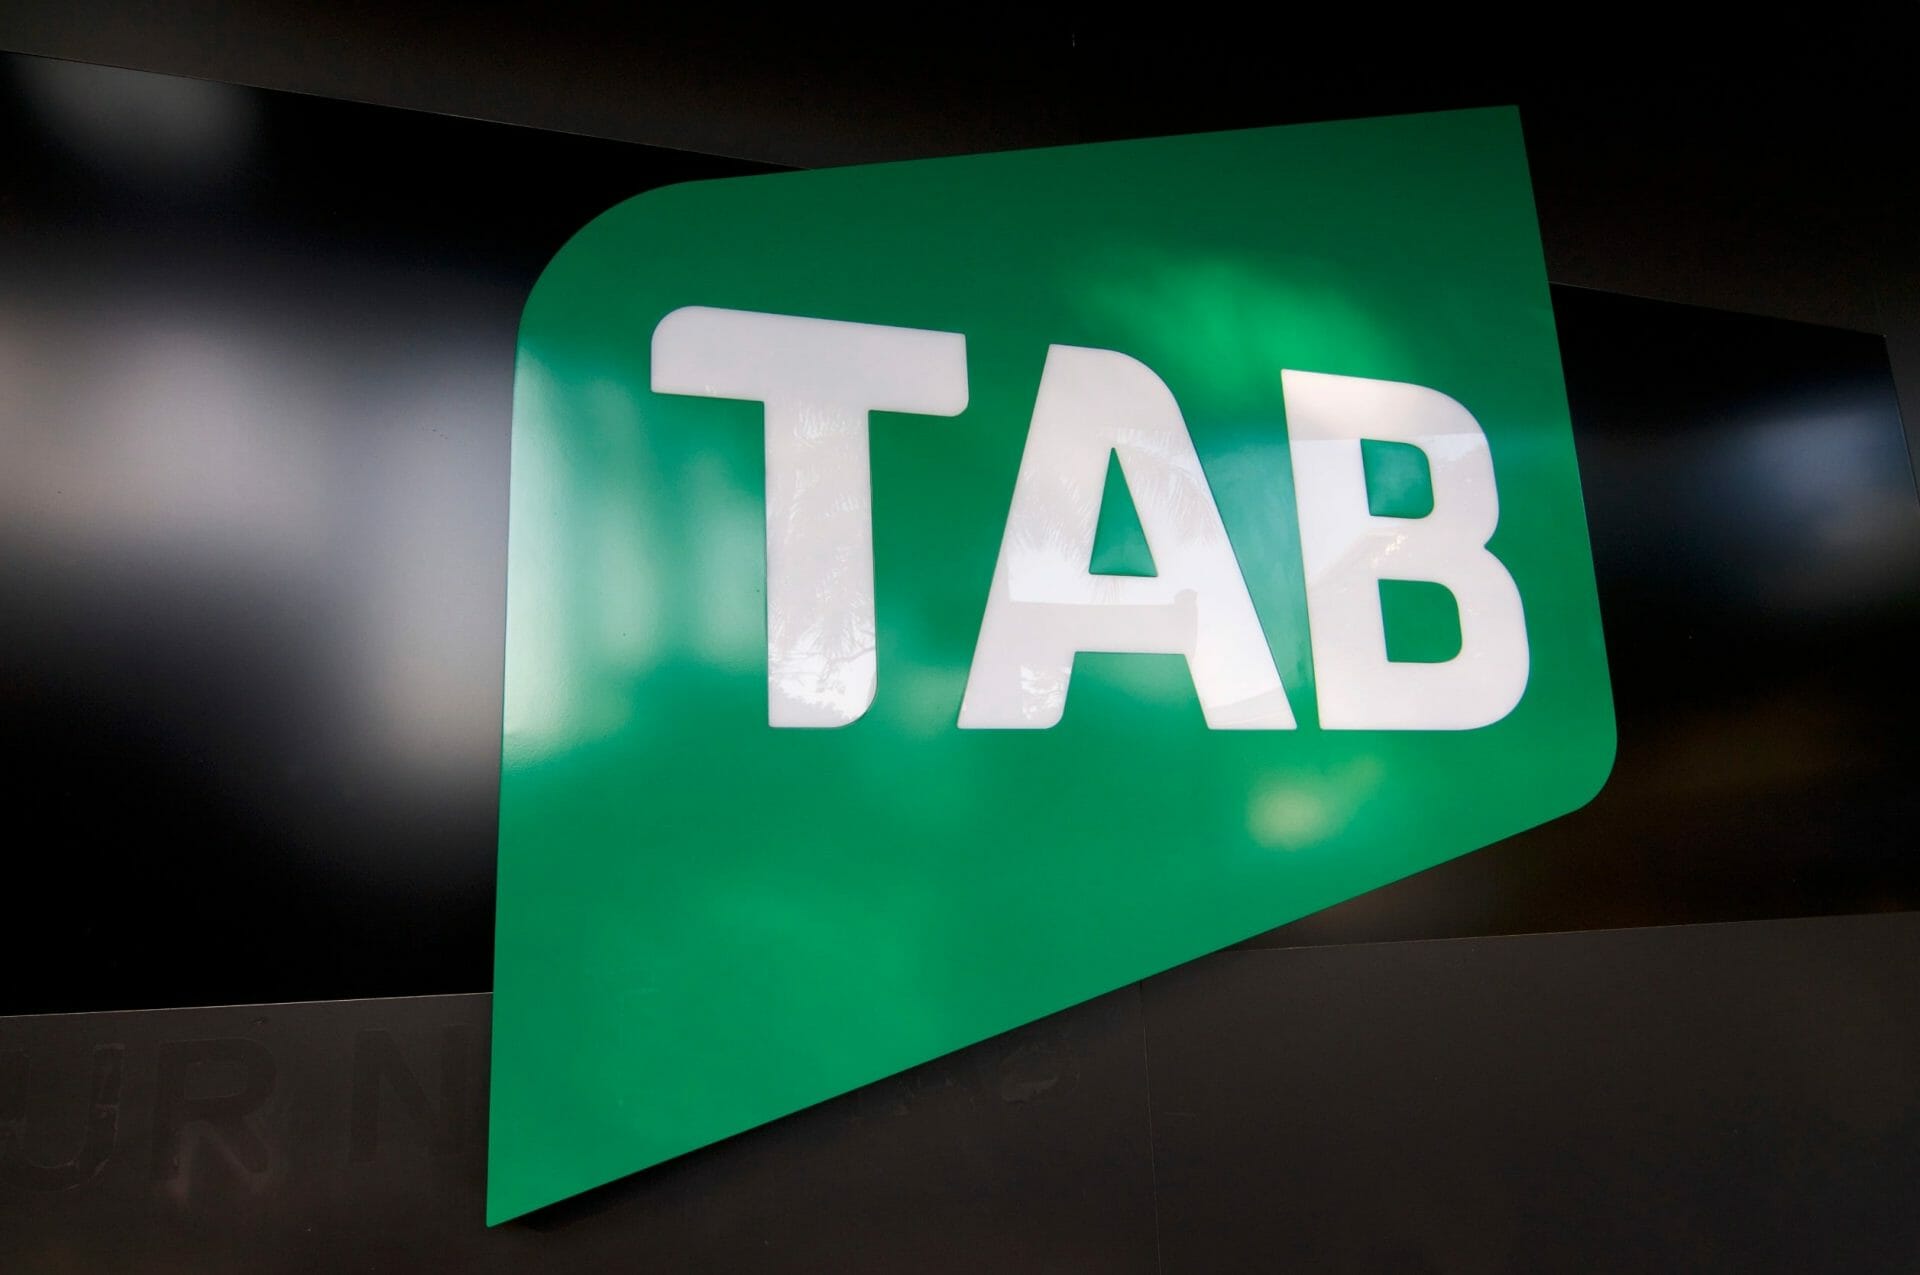 Tabcorp क्रेडिट कार्ड पर प्रतिबंध के संबंध में रेगुलेटर्स के साथ सहमत है।